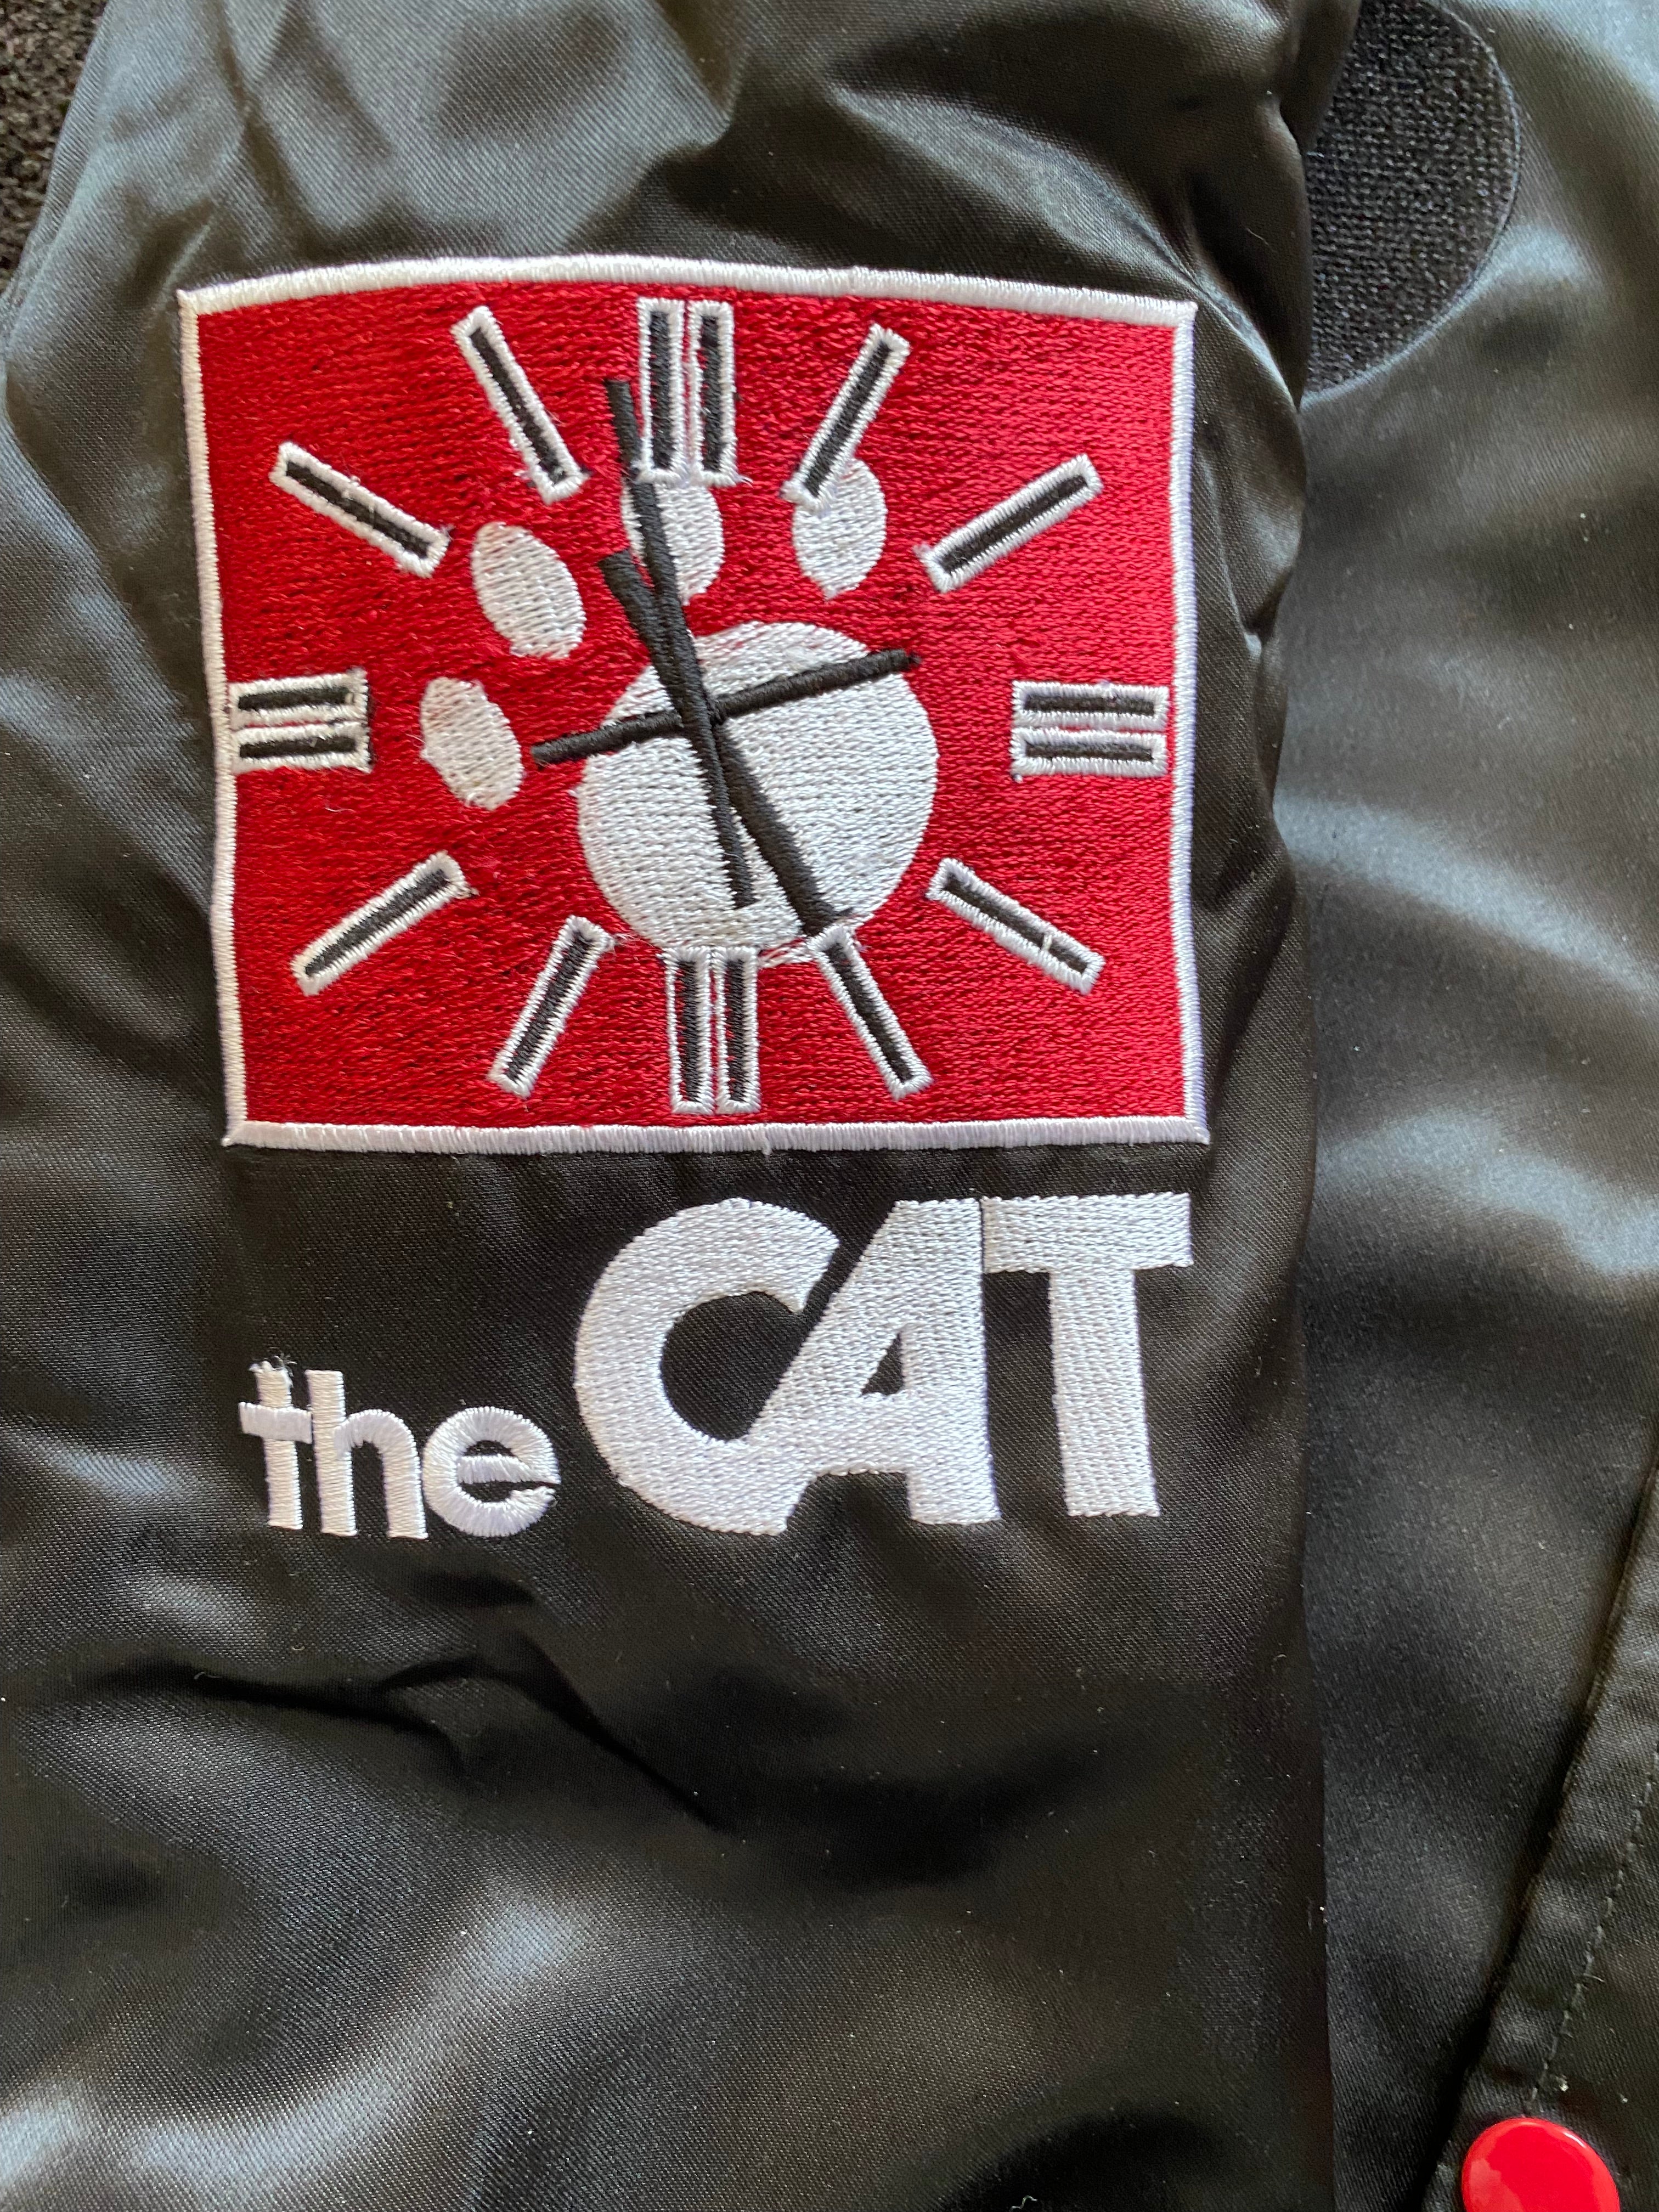 The CAT